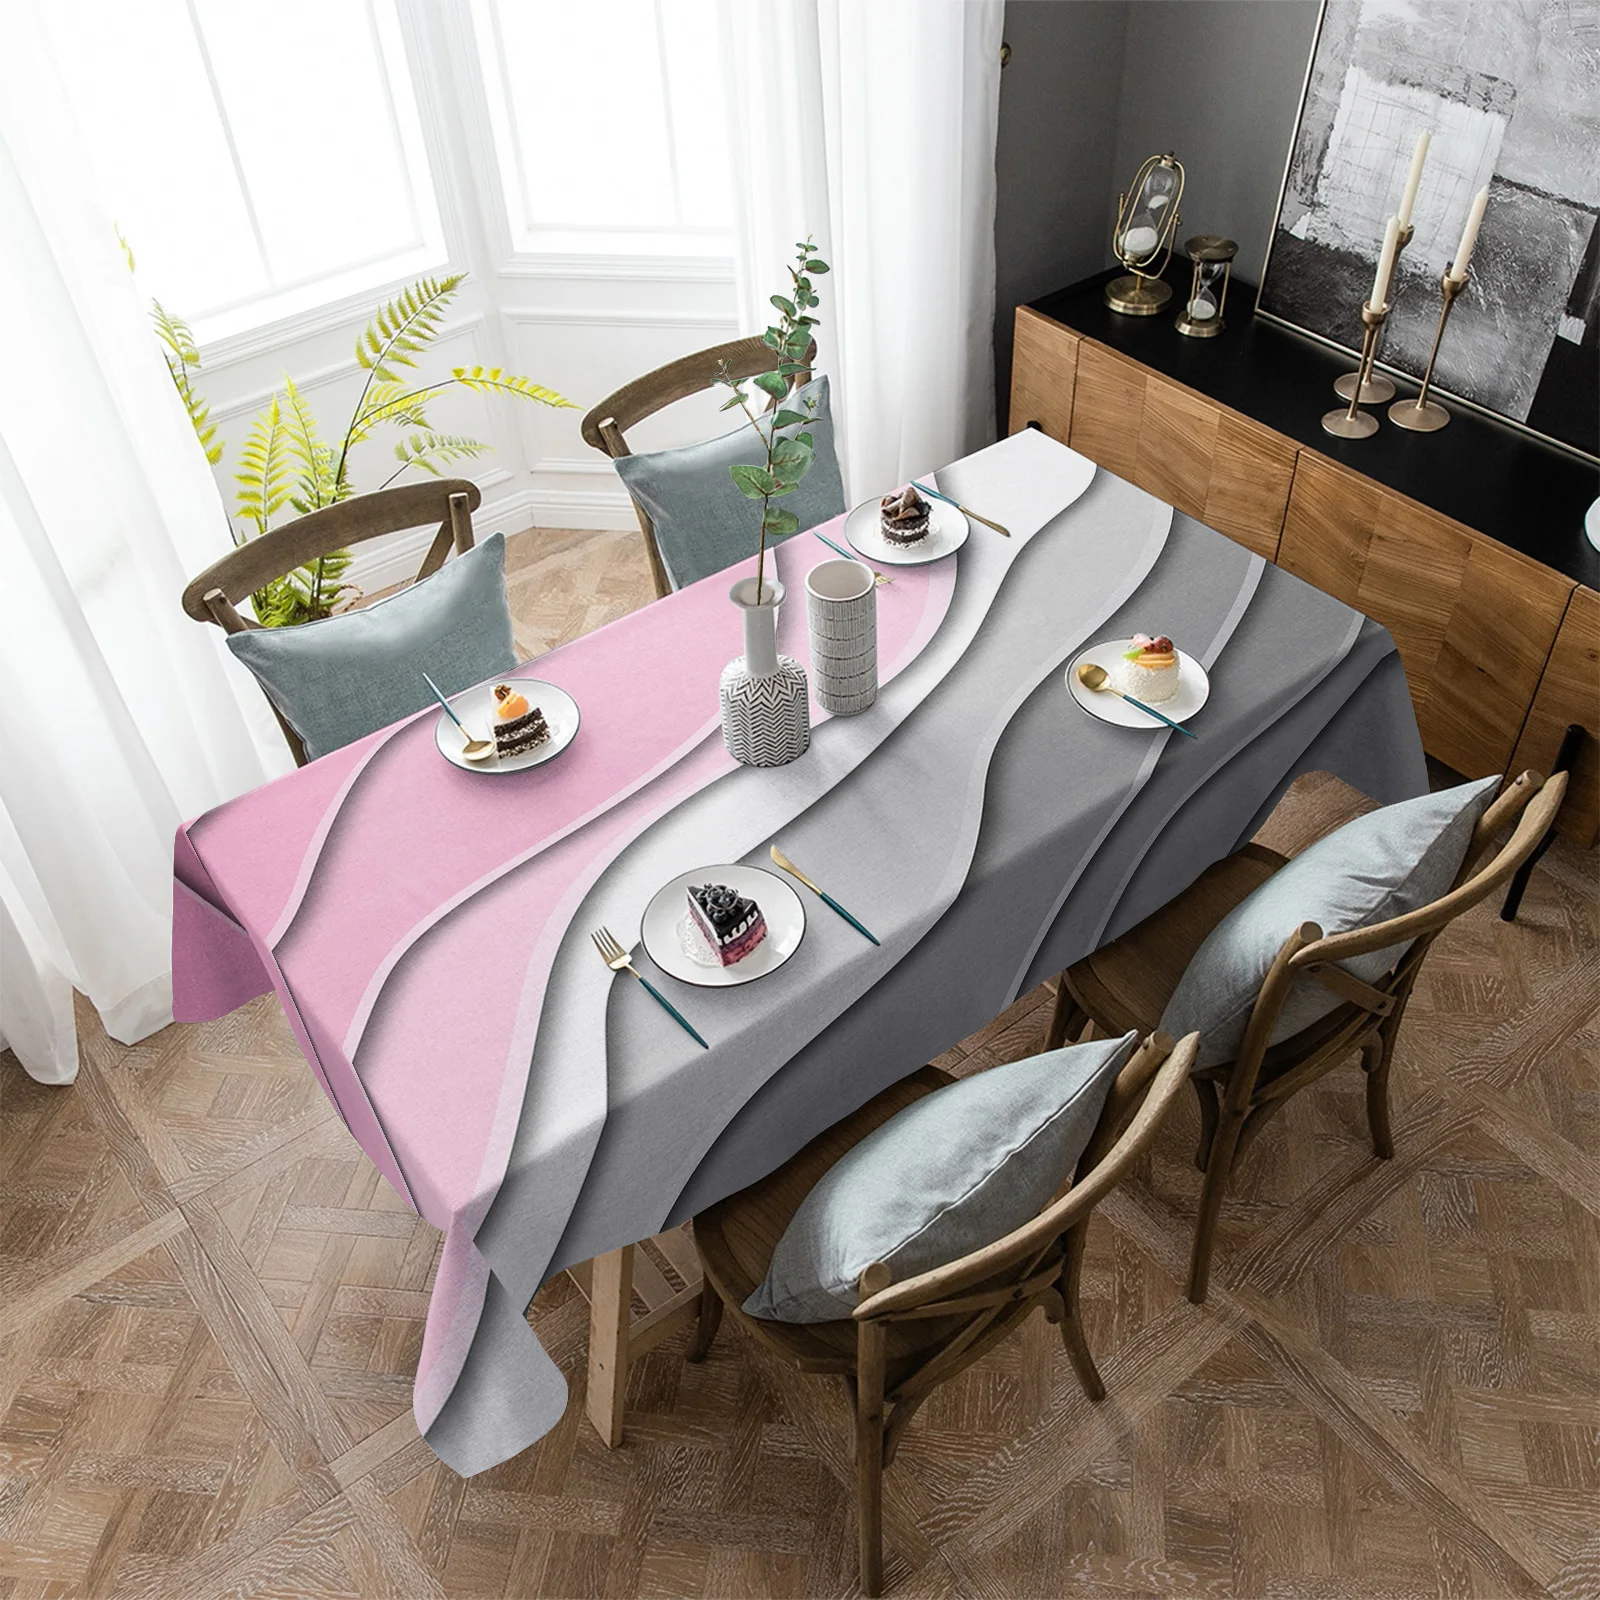 

Водостойкая скатерть, Современная Геометрическая абстрактная настенная скатерть розового и серого цветов, прямоугольное украшение для кухонного стола